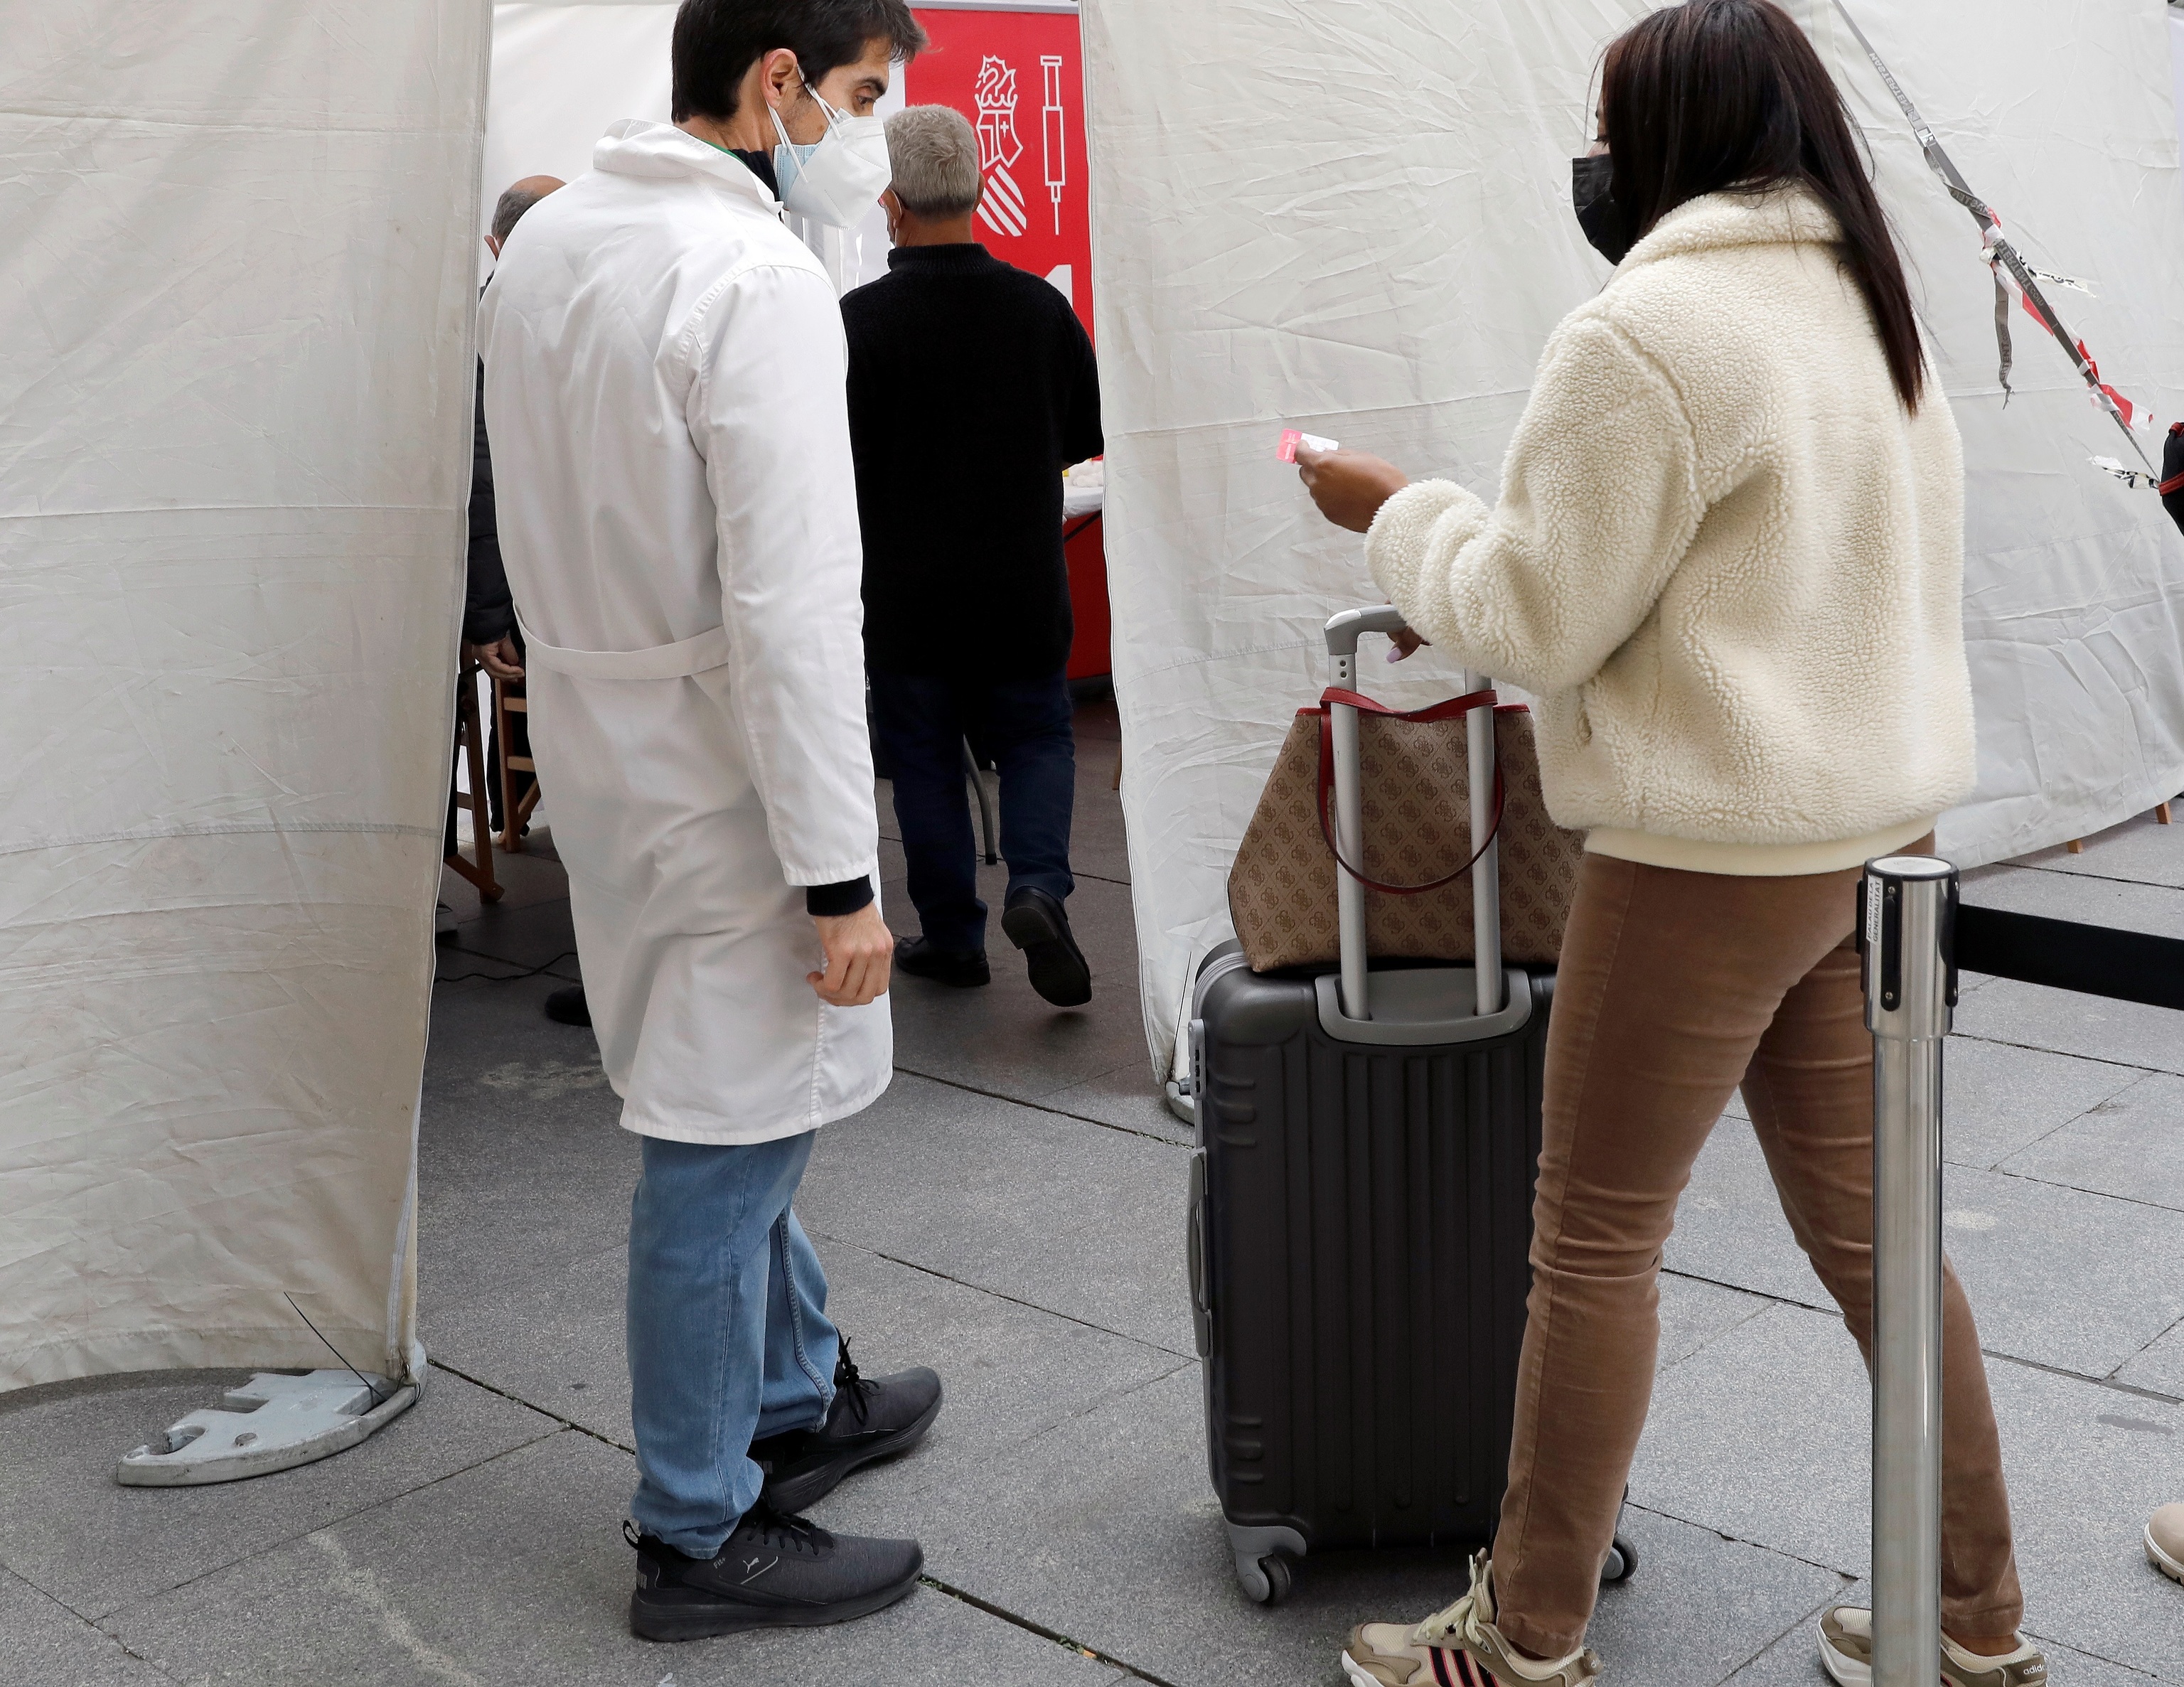 Una joven acude con su maleta a un punto de vacunación móvil contra el Covid-19.